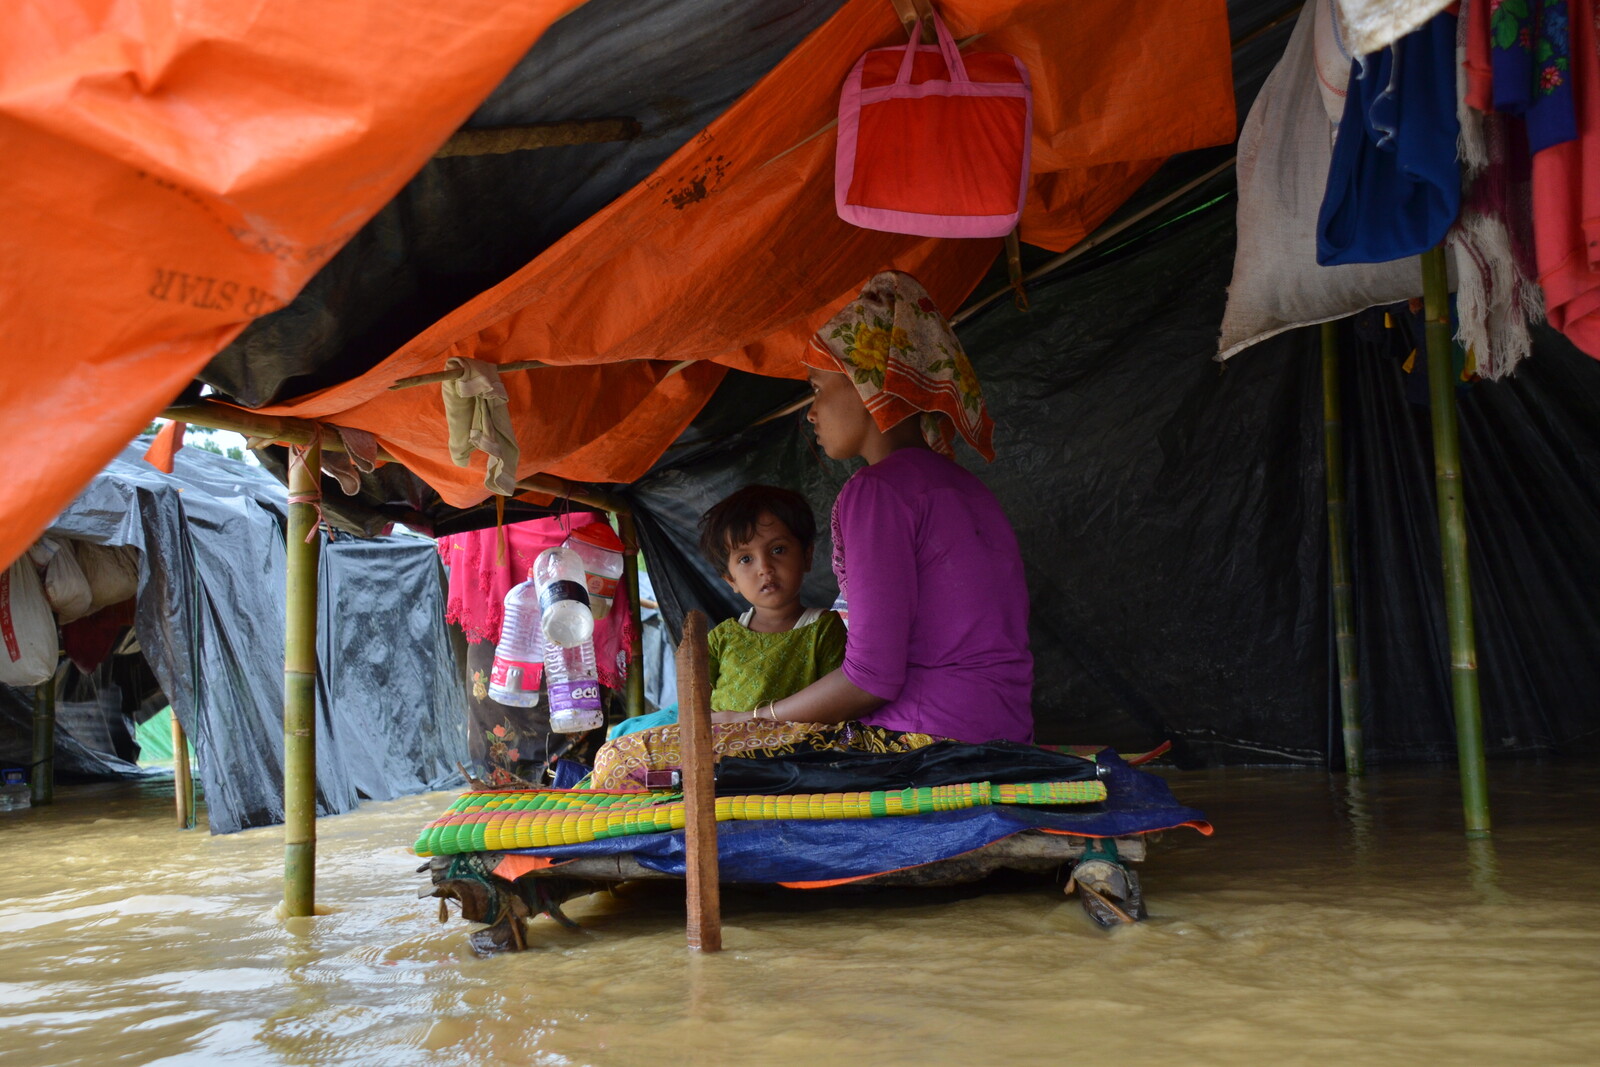 Mutter und Kind in einem durch Monsunregen überschwemmten Flüchtlingscamp in Bangladesch